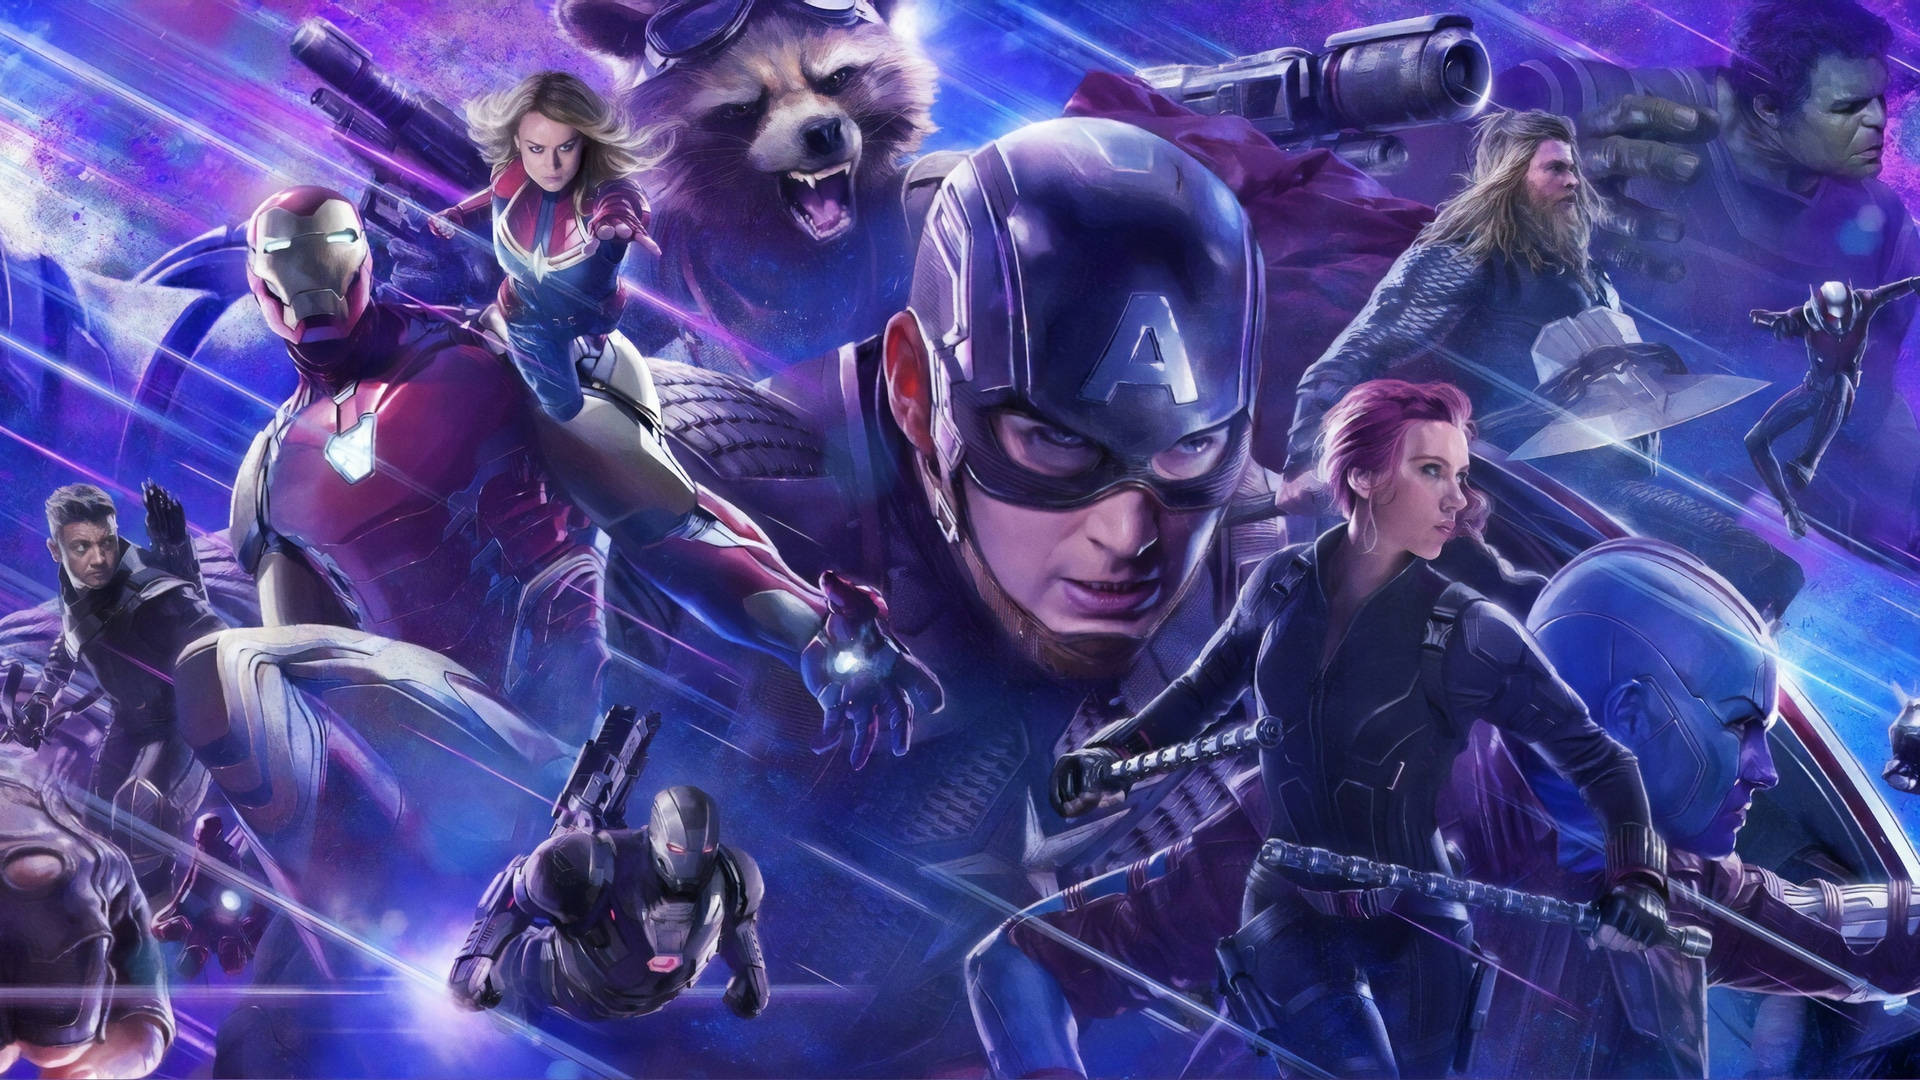 Vereintund Erobert! Unsere Lieblingssuperhelden Aus Den Avengers: Thor, Captain America, Iron Man, Der Unglaubliche Hulk Und Black Widow. Wallpaper